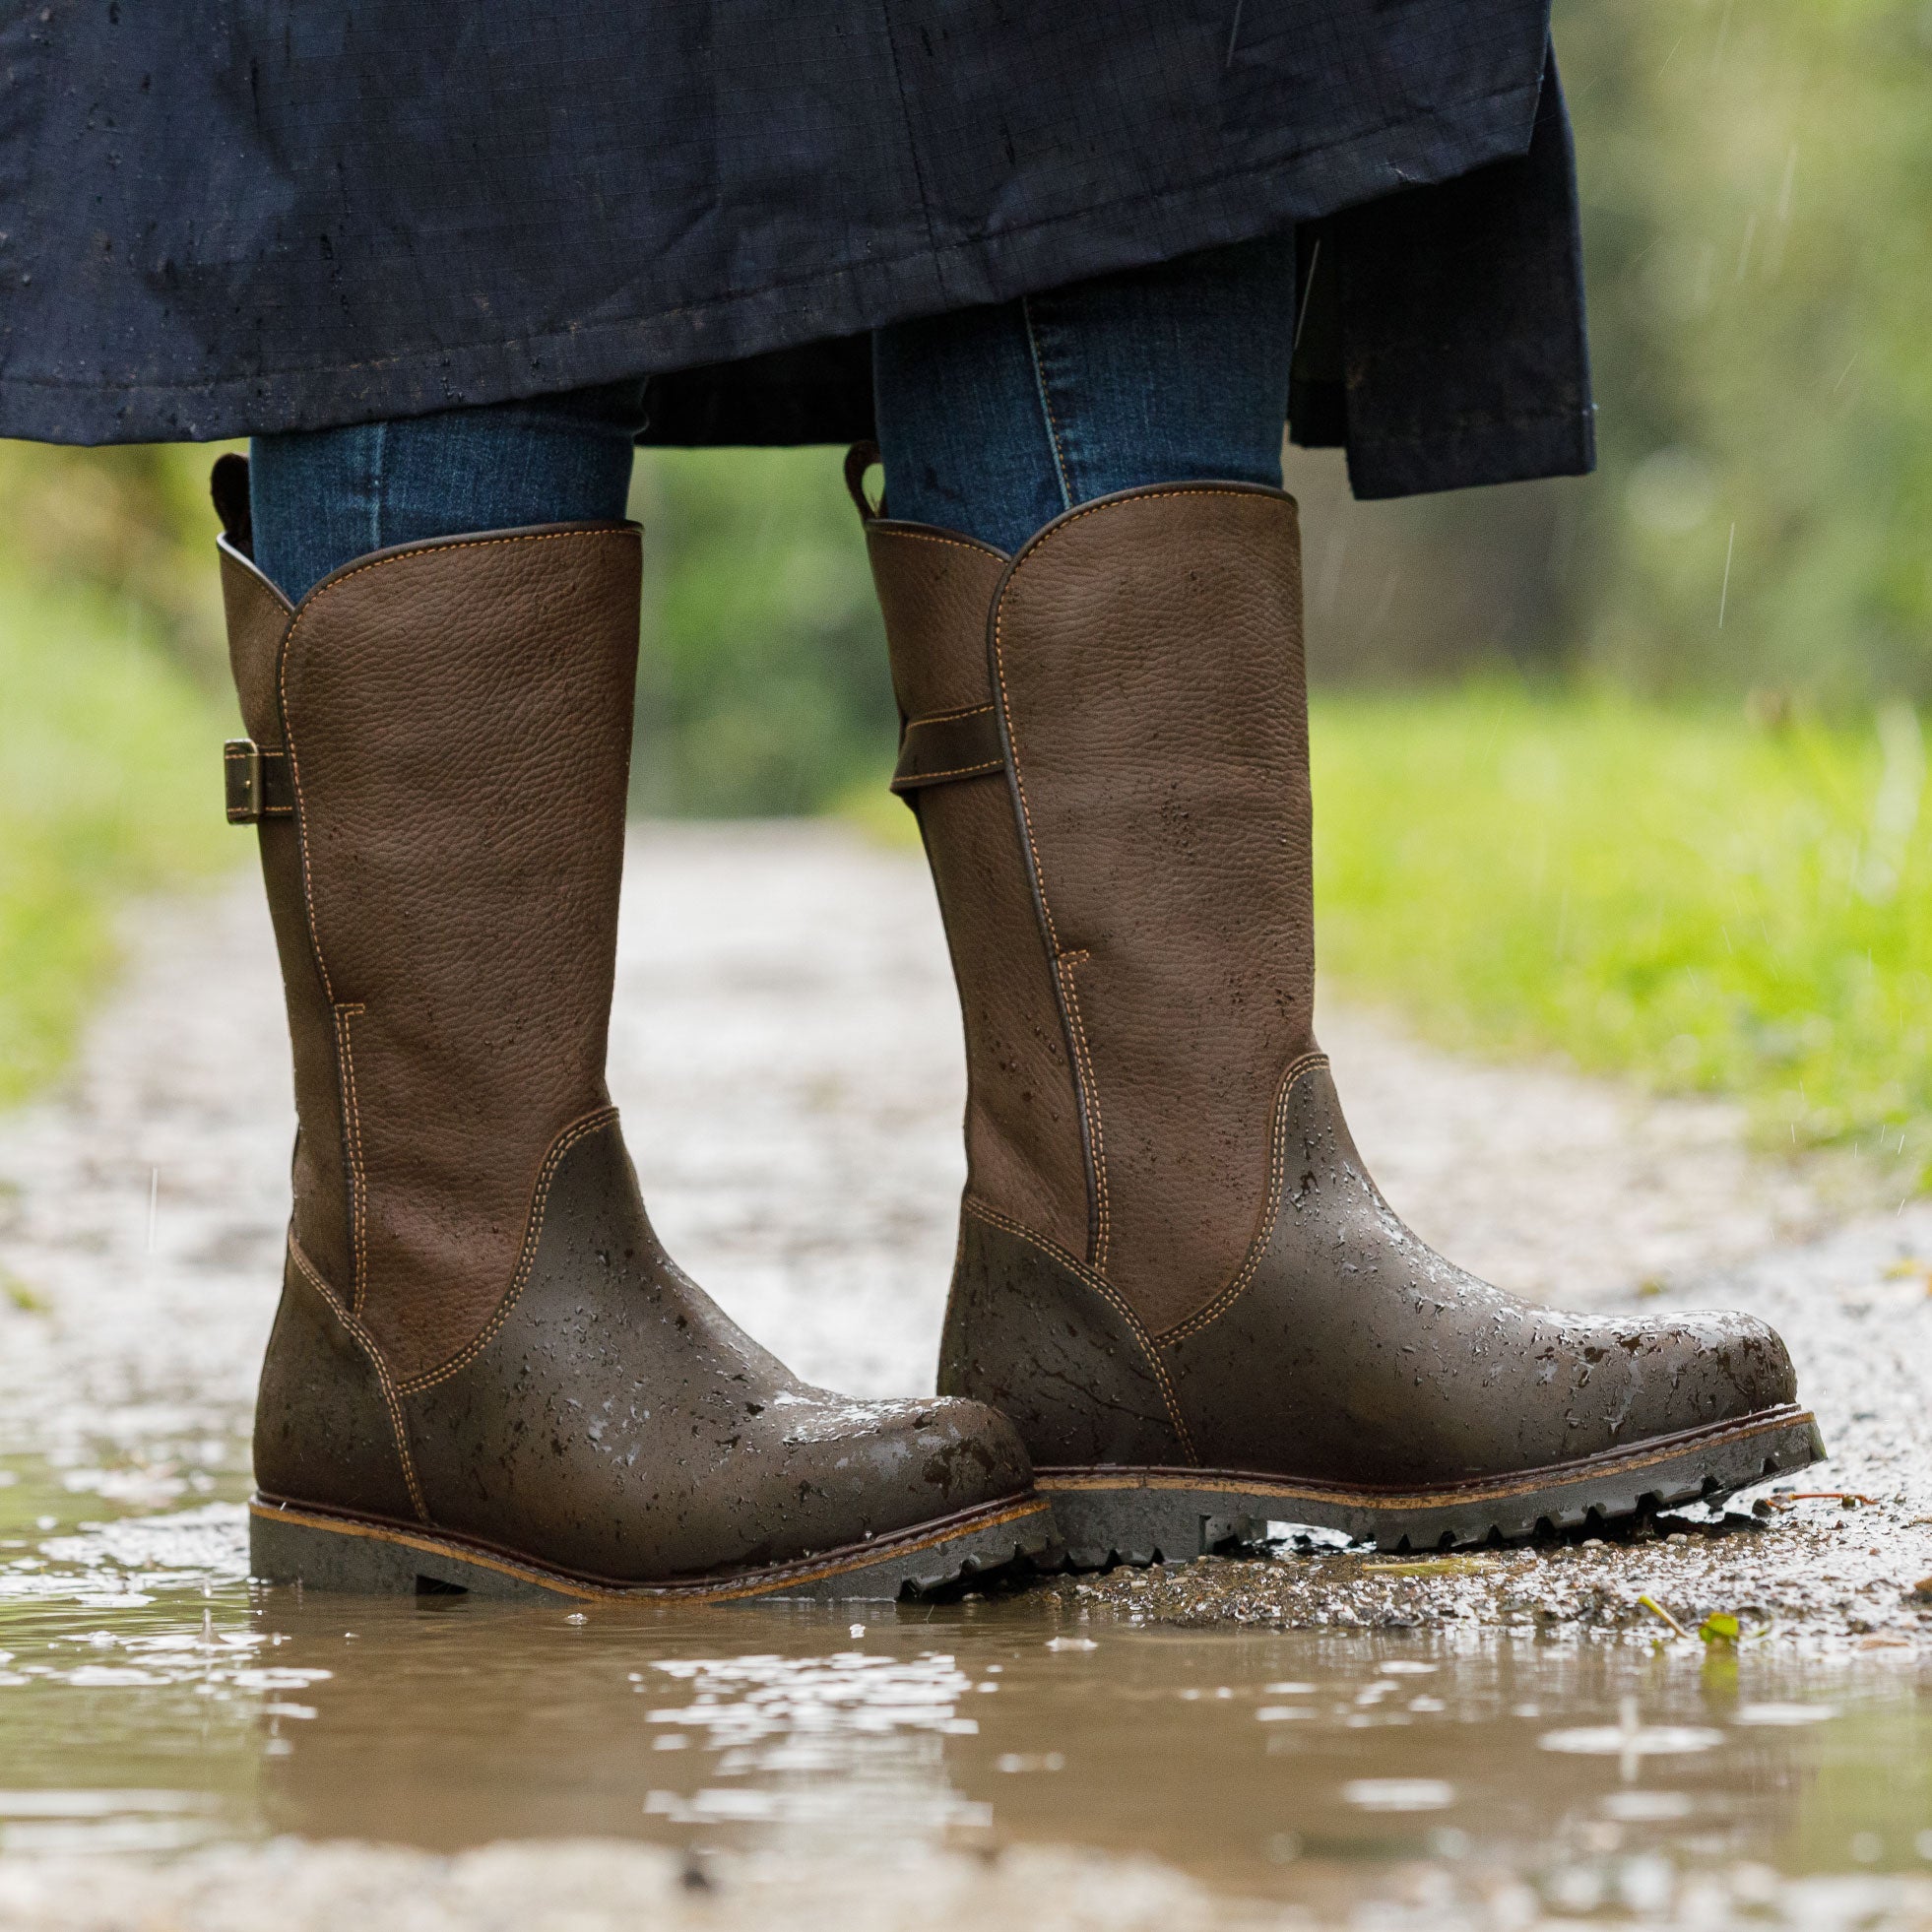 resole waterproof boots